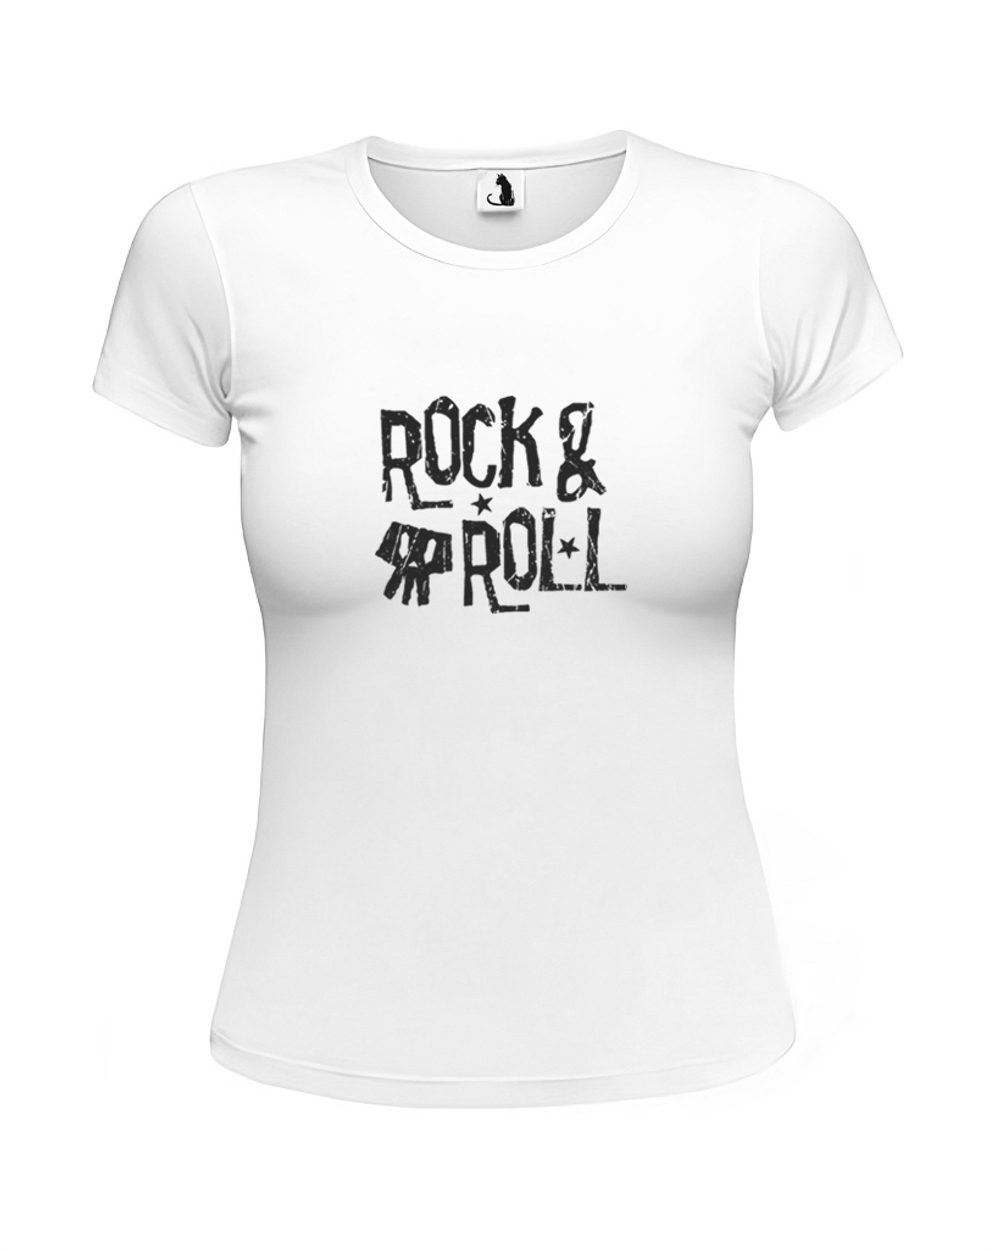 Футболка Rock and roll женская приталенная белая